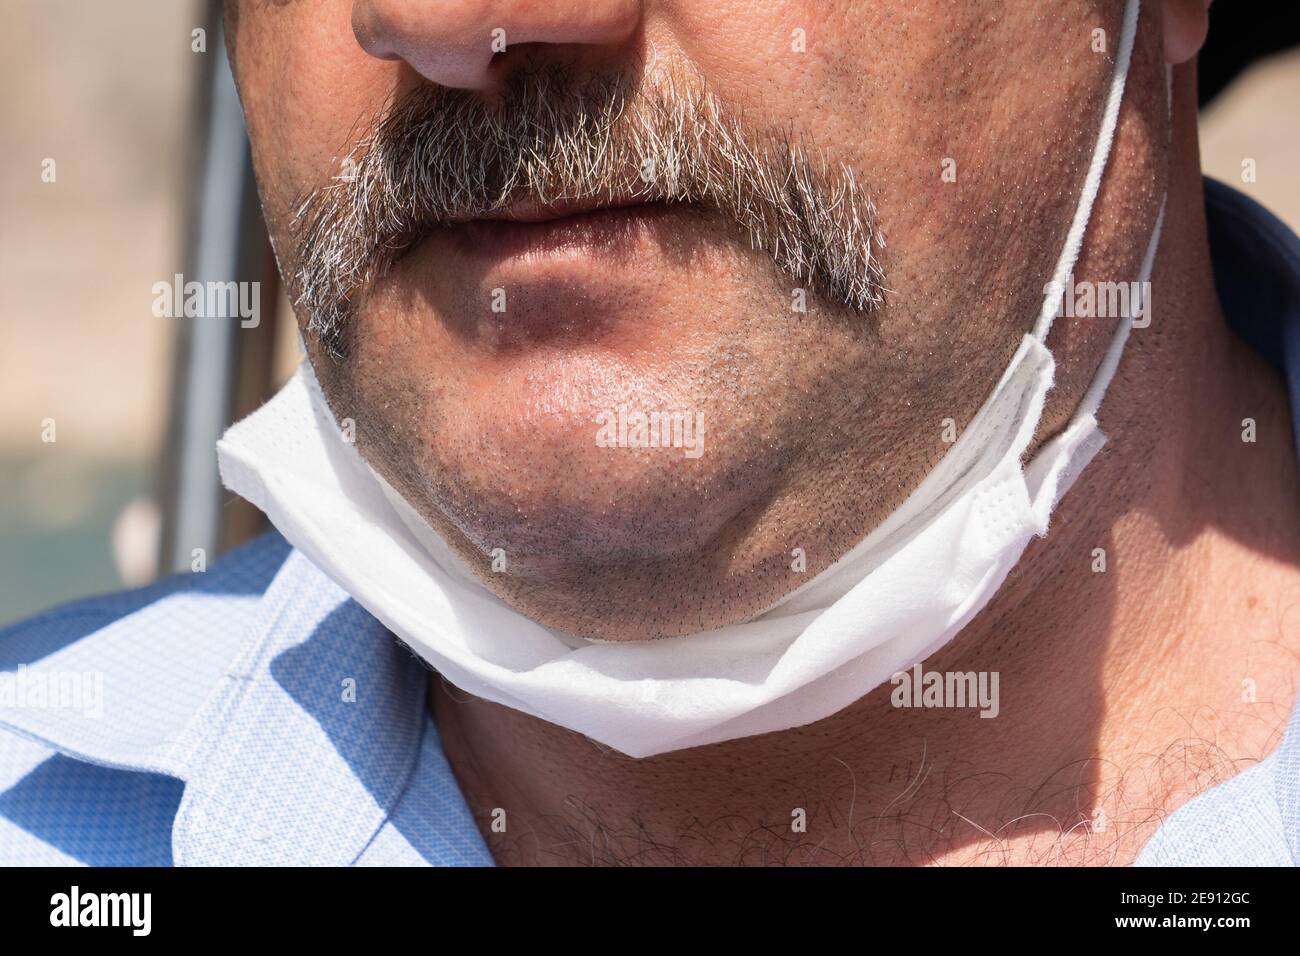 Schnurrbart Mann mit einer weißen schützenden medizinischen Maske, bis zum Kinn gesenkt. Falsches Tragen von medizinischen Masken unter Quarantäne. Nahaufnahme. Stockfoto